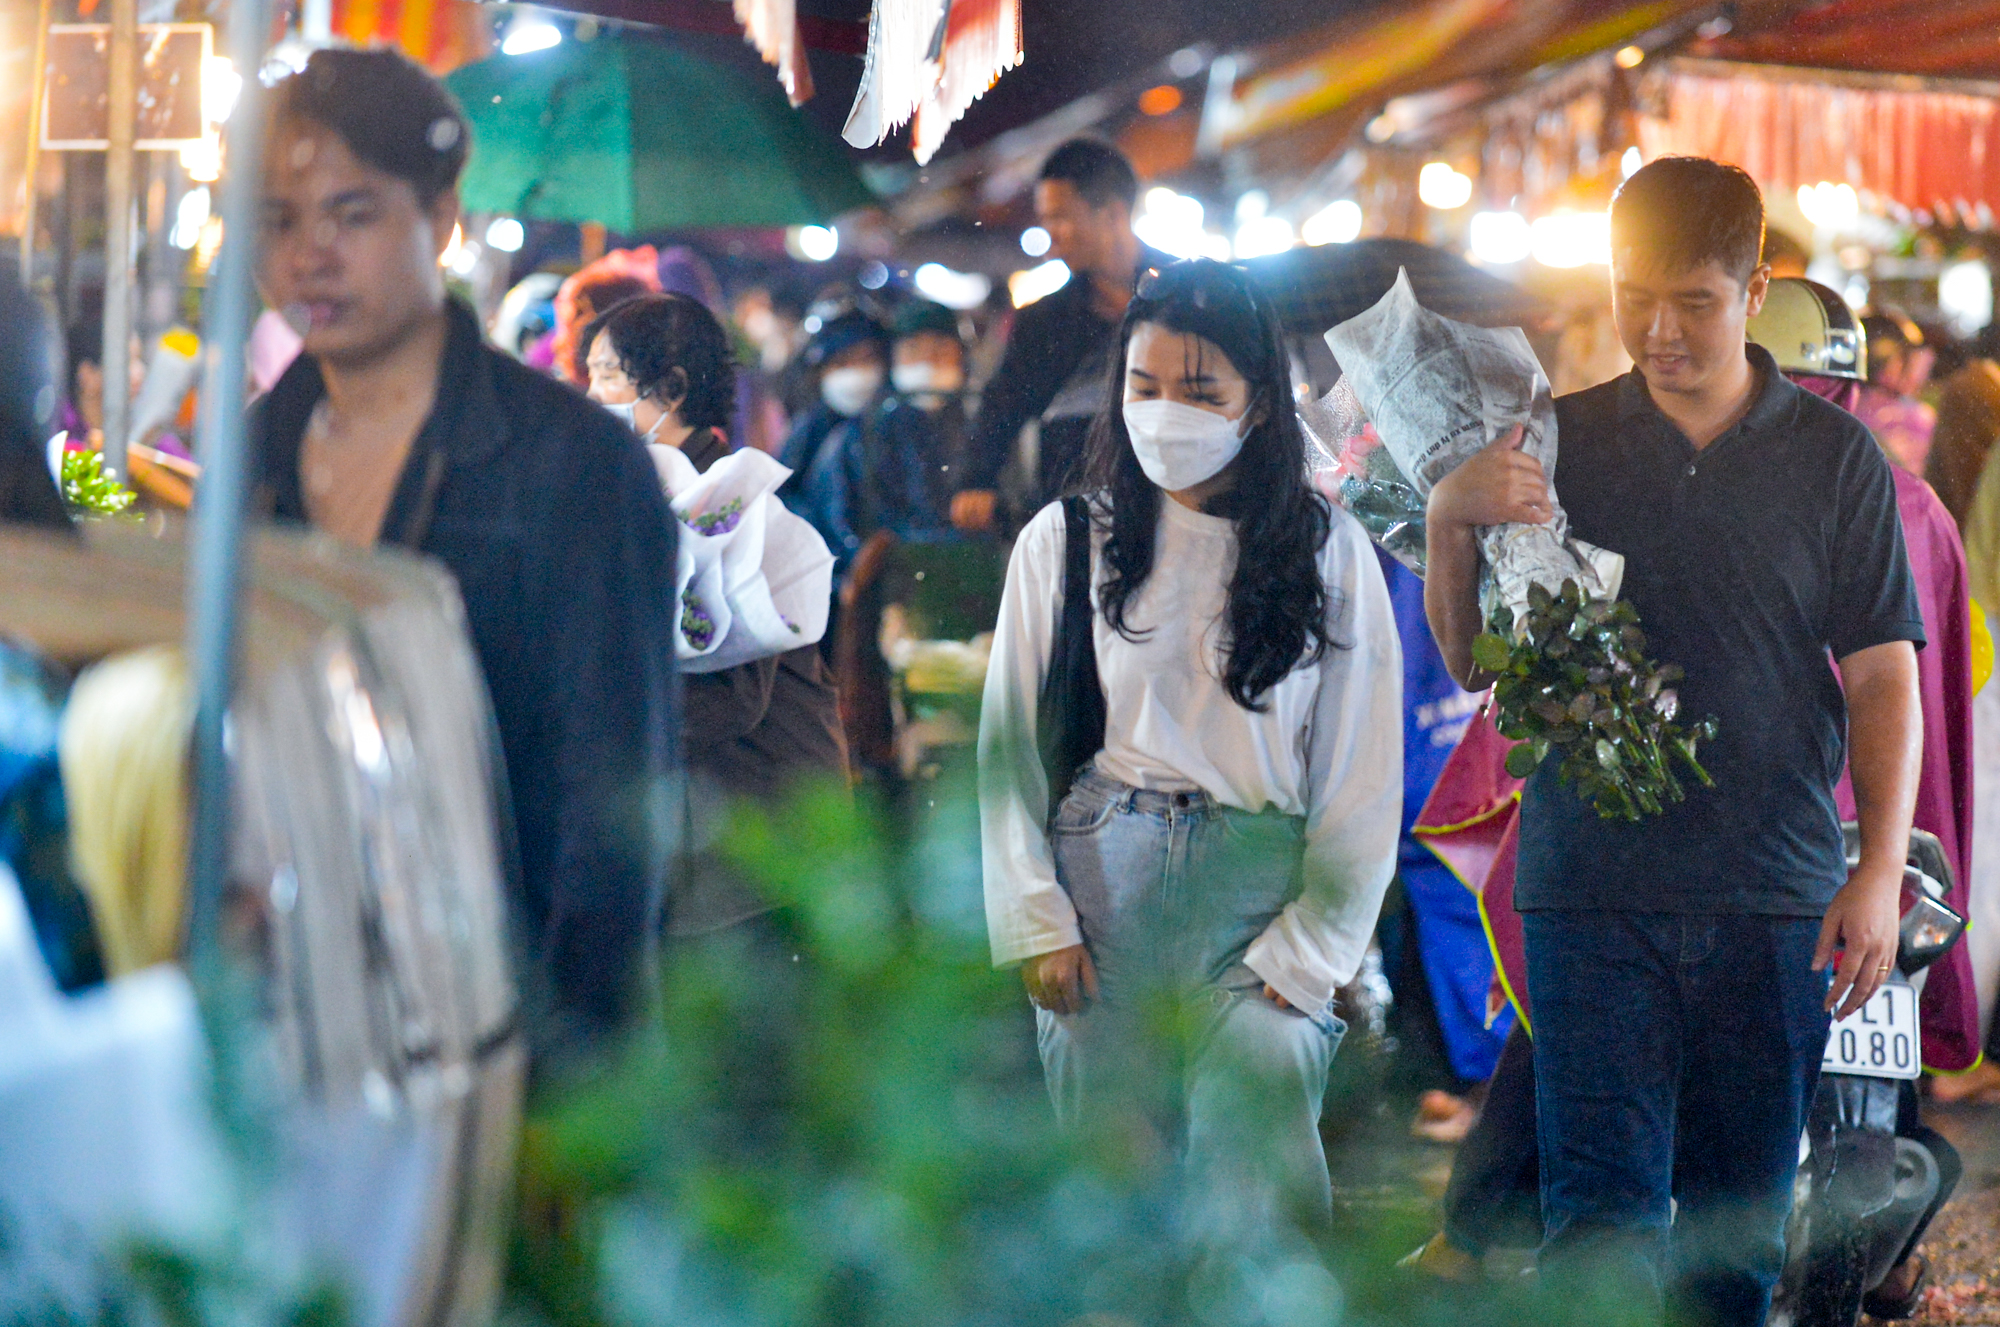 Ảnh: Mặc áo mưa, đội ô đi chợ hoa đêm lớn nhất miền Bắc trước ngày Phụ nữ Việt Nam 20/10, nhiều người co ro vì lạnh - Ảnh 12.